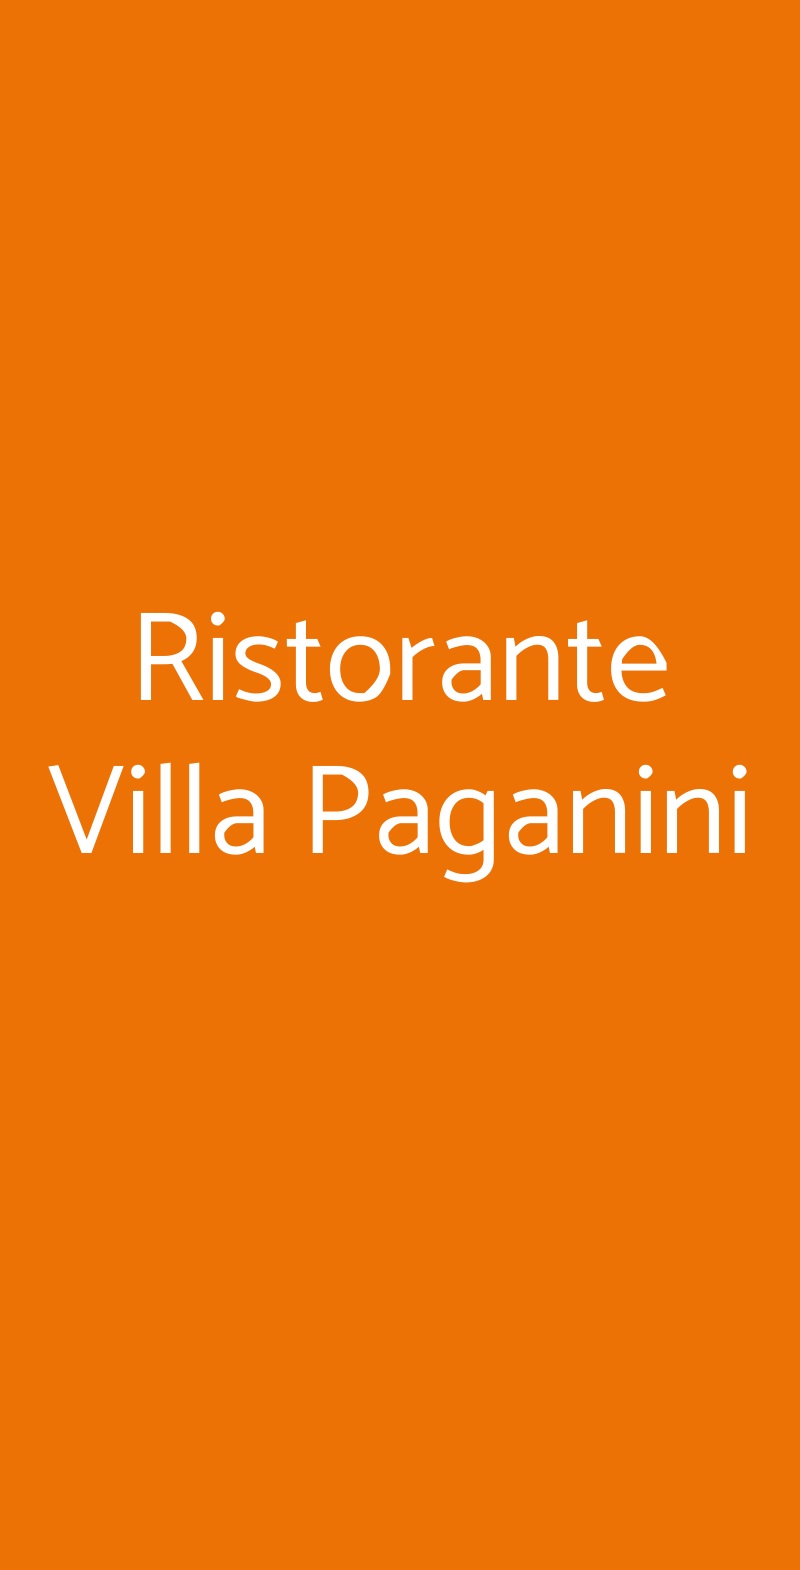 Ristorante Villa Paganini Roma menù 1 pagina